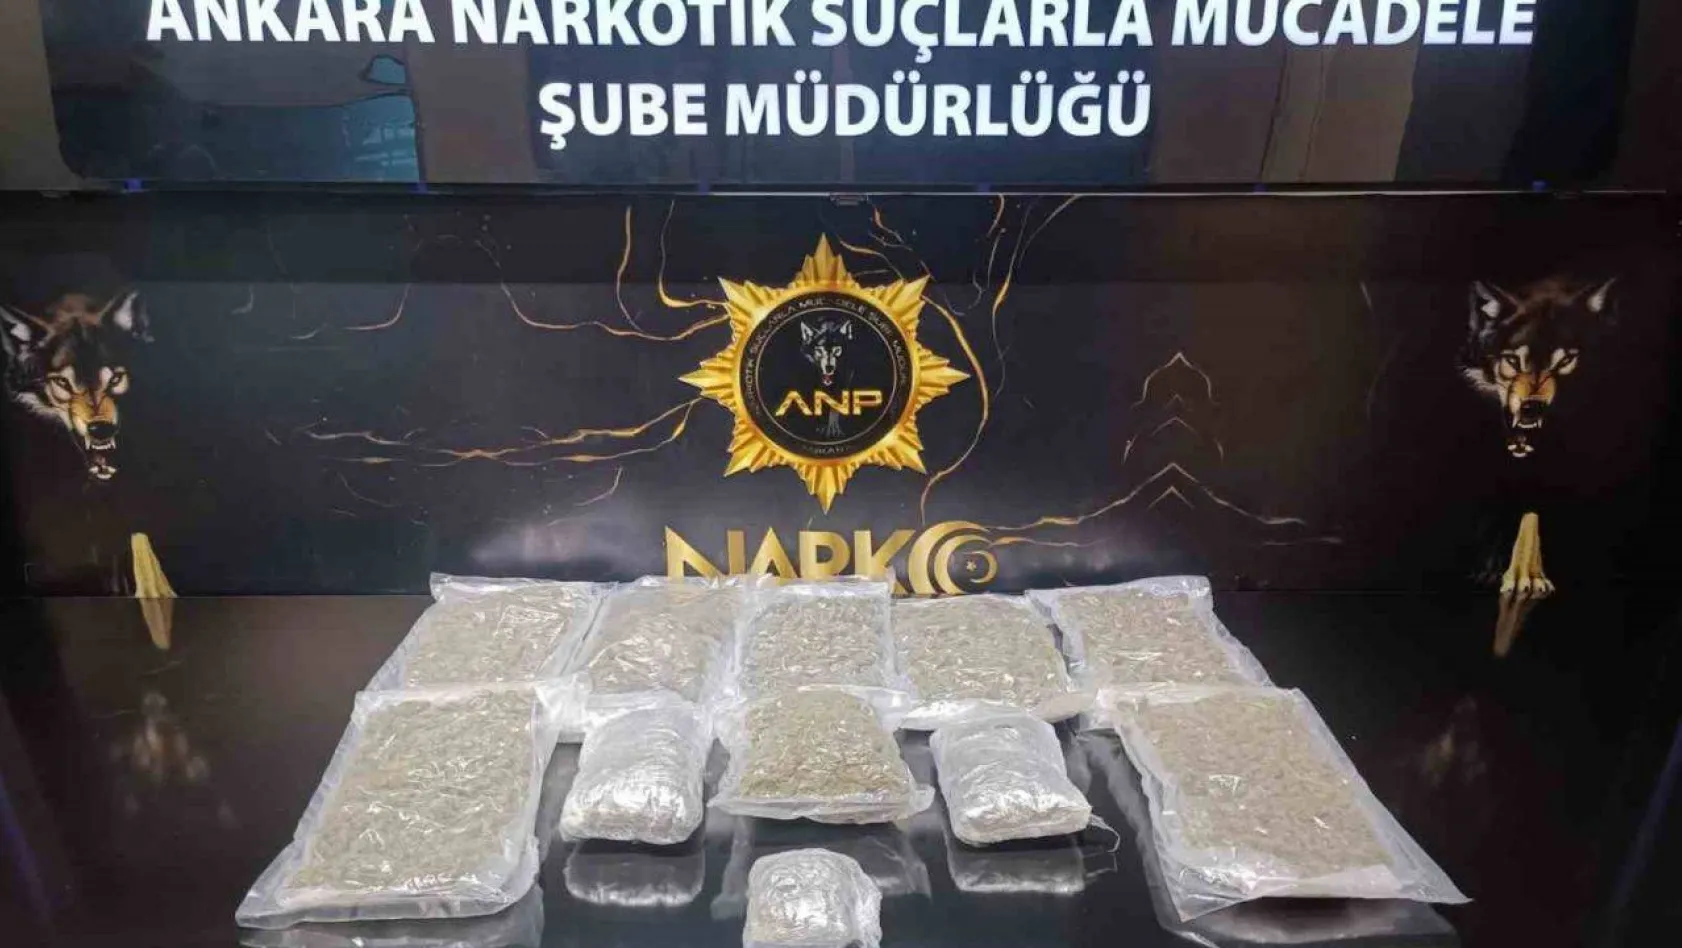 Ankara'da 'Narkogüç' operasyonlarında 5 kilo uyuşturucu ele geçirildi